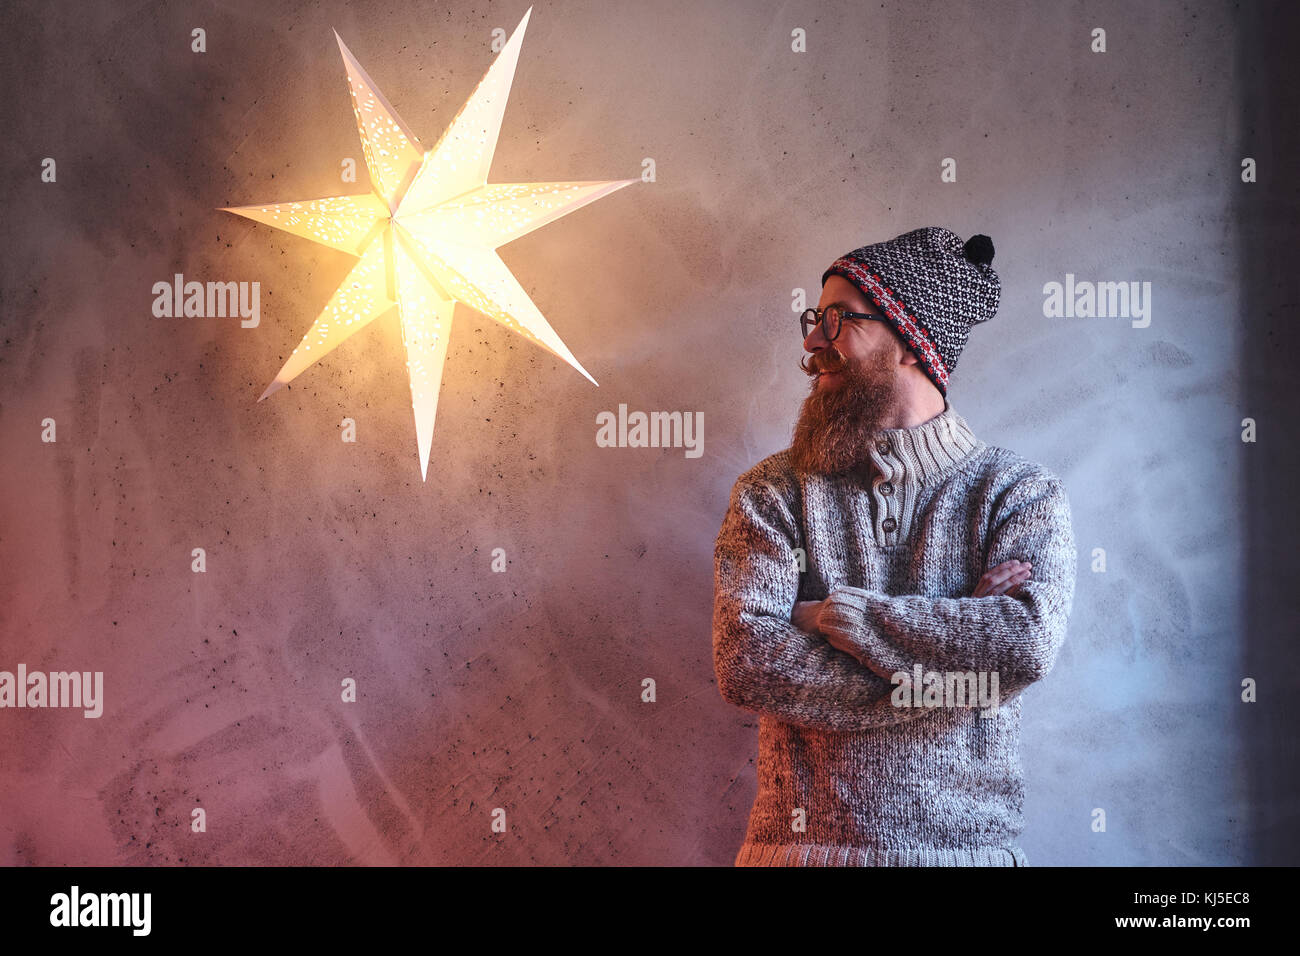 Bärtige Mann in einem warmen Pullover und eine Mütze über die Mauer mit einem dekorativen Stern Lampe gekleidet. Stockfoto